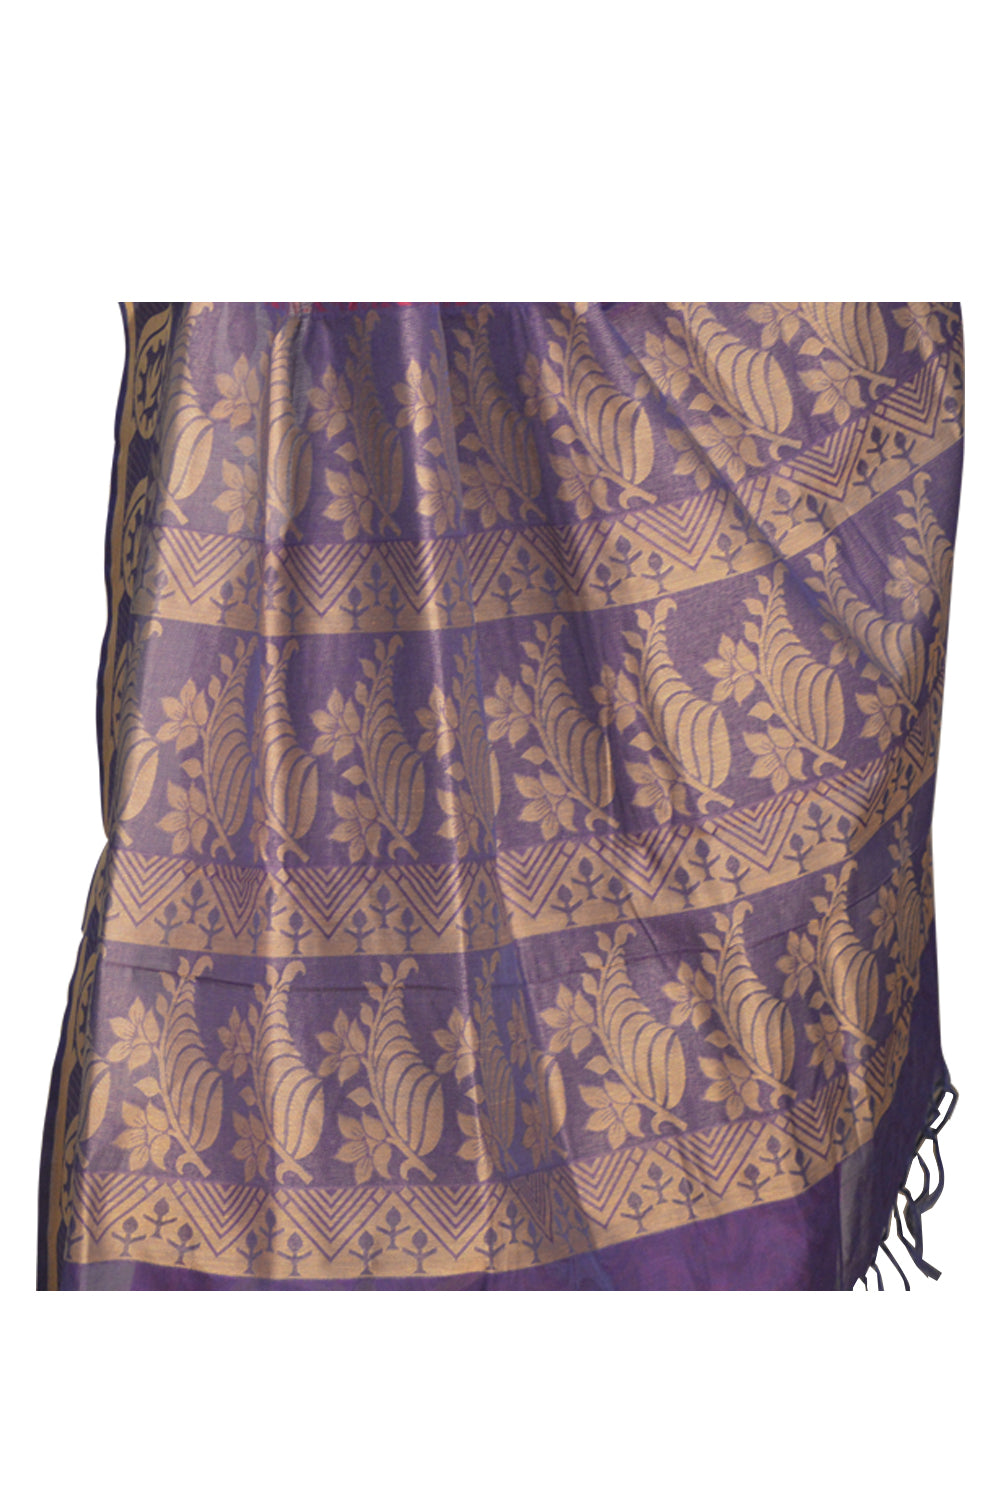 Original South Cotton Purple Saree With Leaf Art Design on Pallu